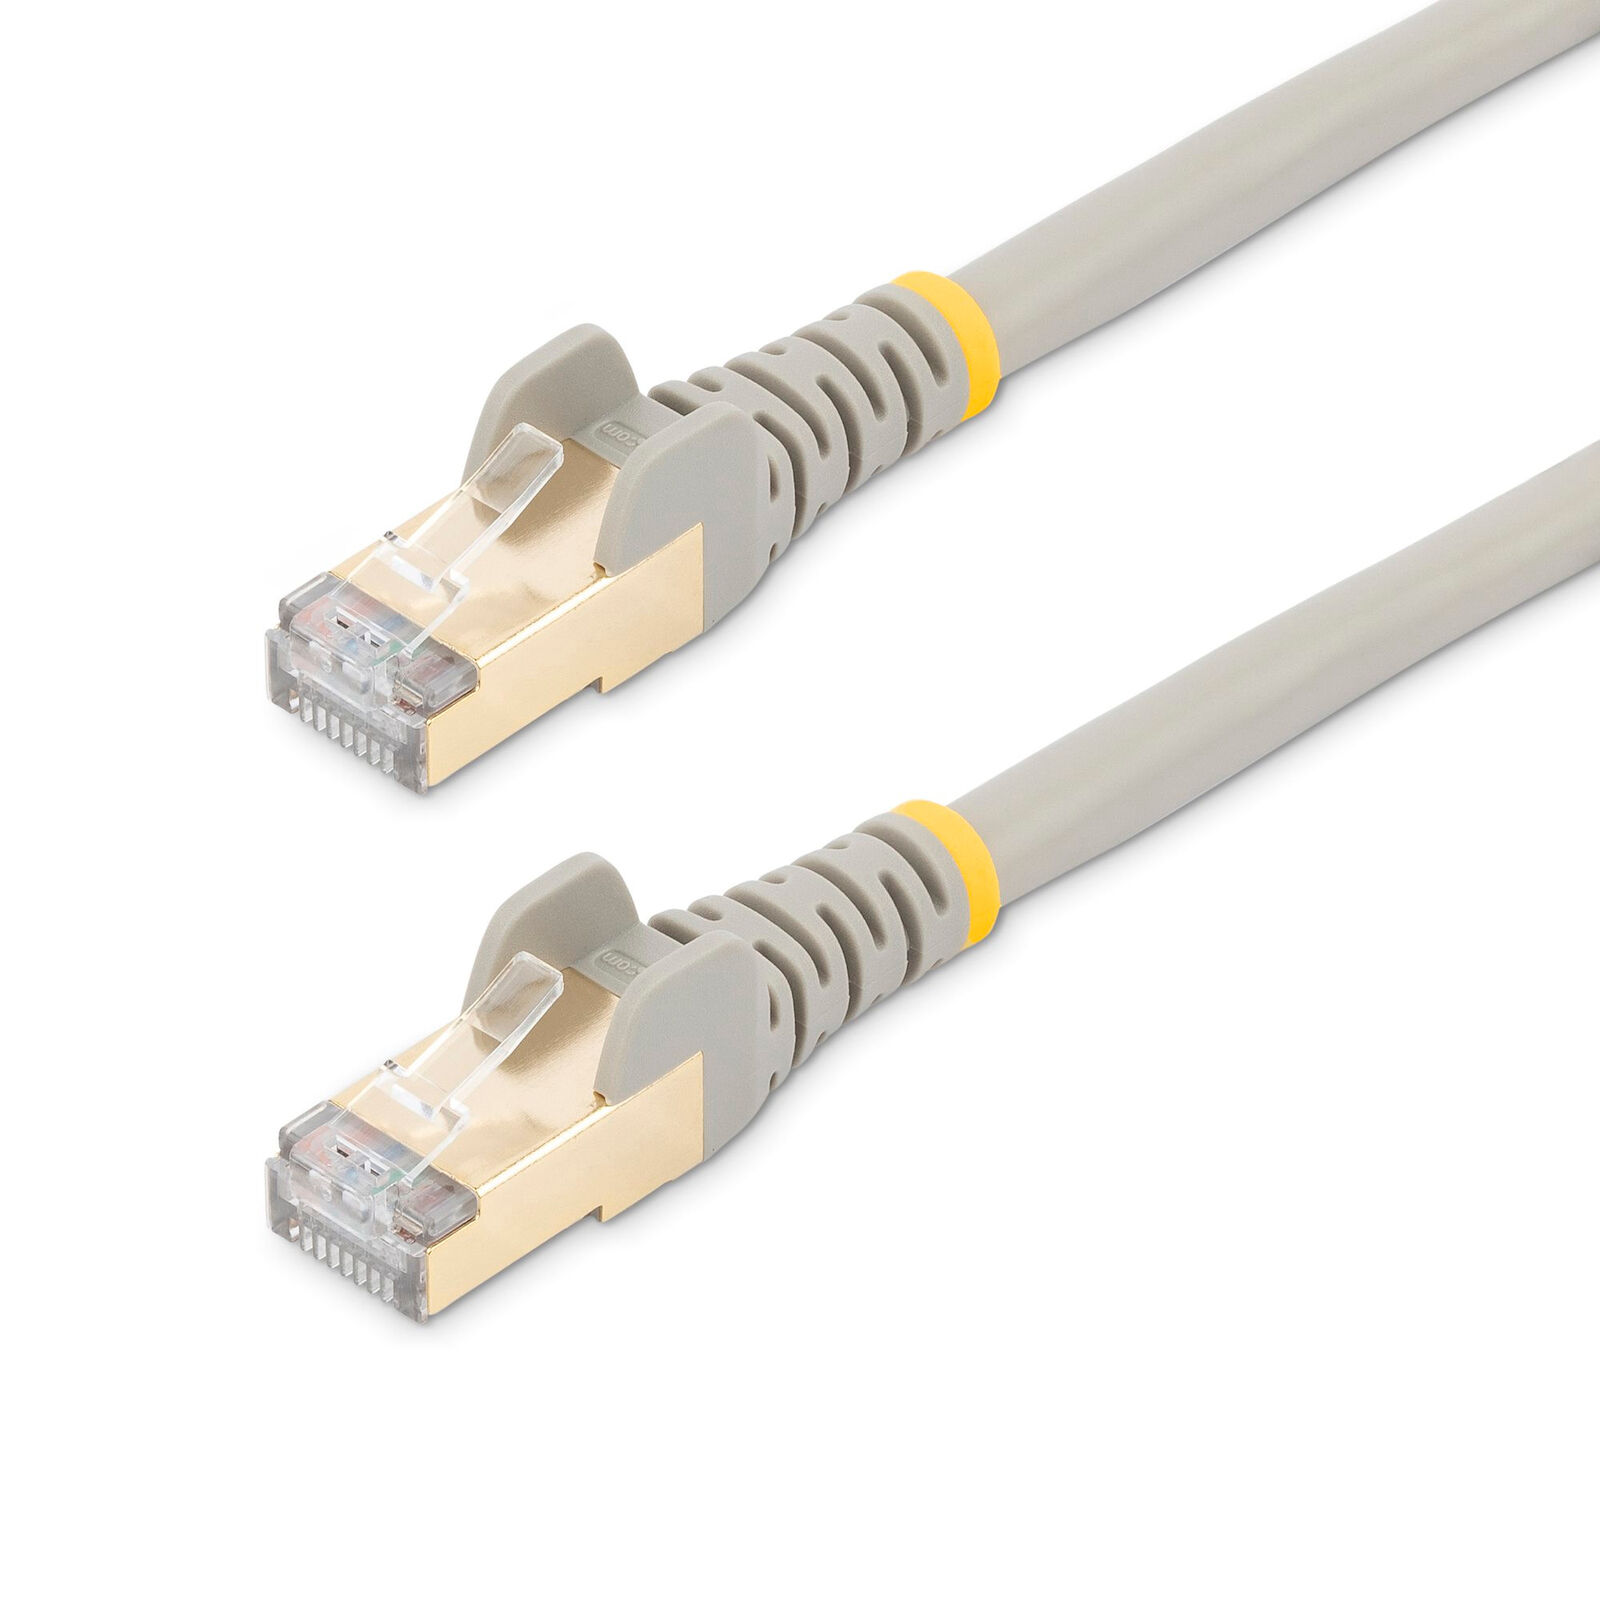 Bundle of 20 STAR TECH 1ft CAT6 Ethernet Cables